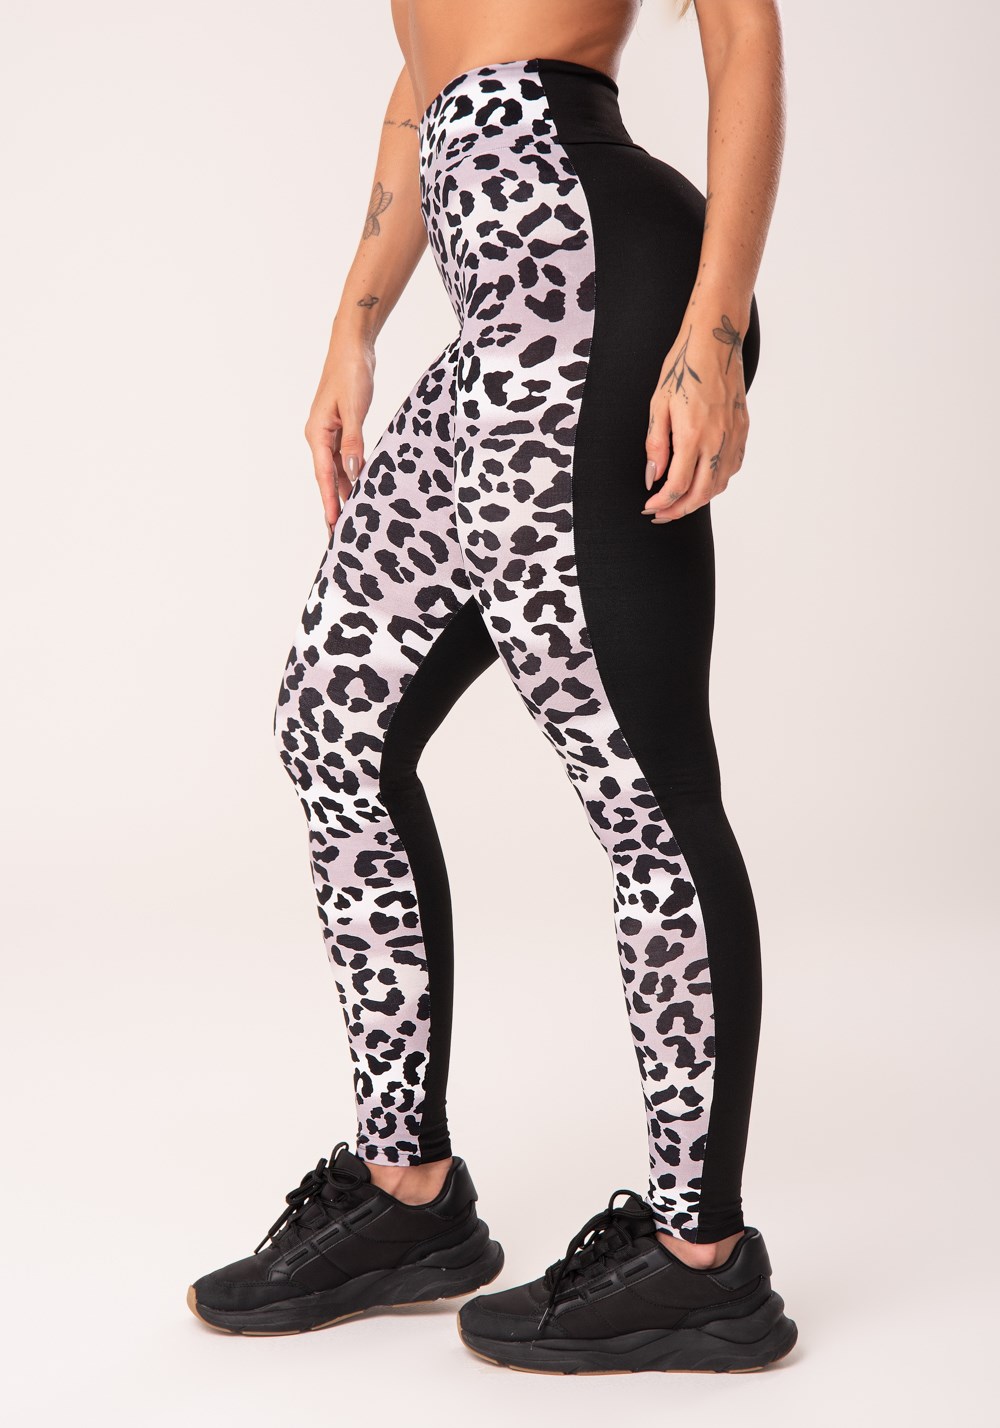 Calça legging wild preta com estampa de leopardo cinza